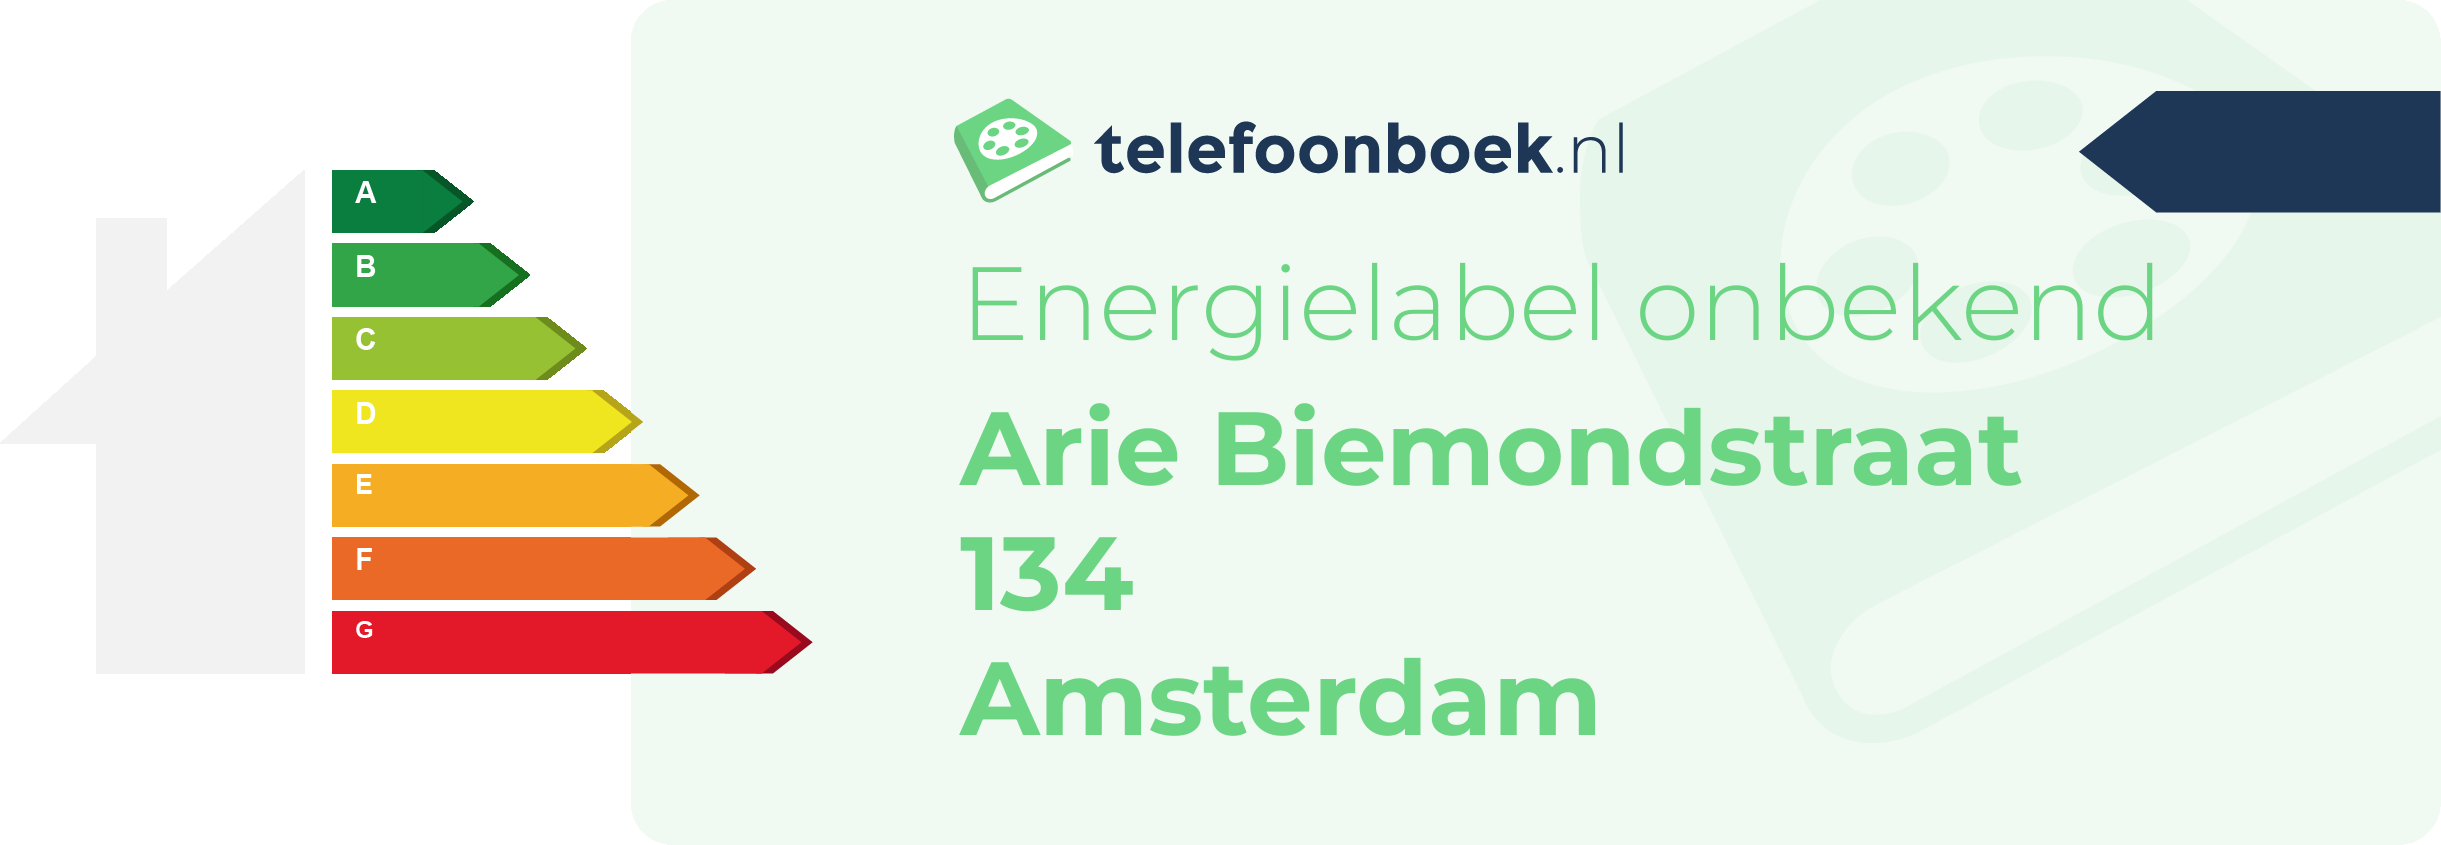 Energielabel Arie Biemondstraat 134 Amsterdam